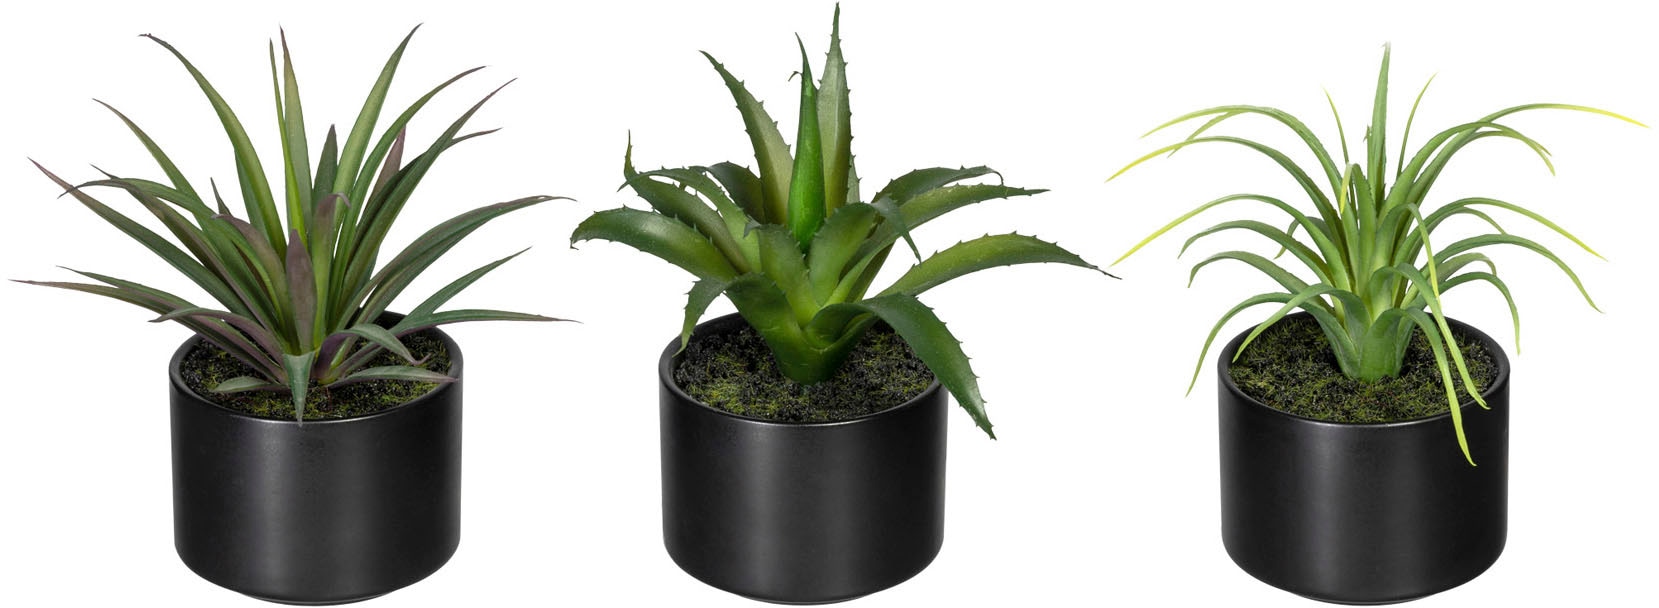 Creativ green Künstliche Zimmerpflanze »Set aus Aloe, Agave und Tillandsie«, im Keramiktopf, 3er Set